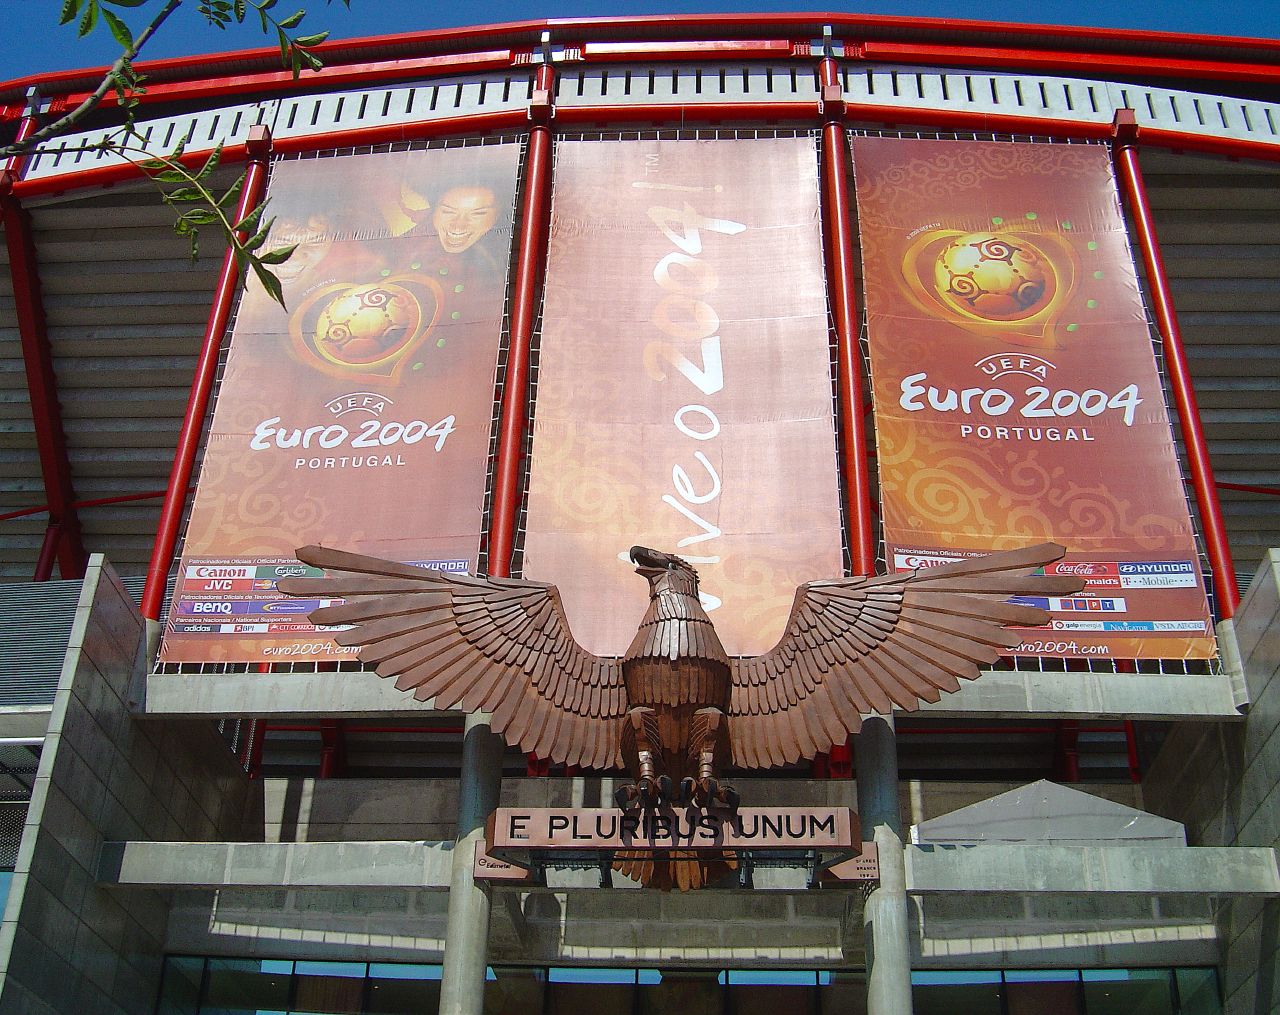 Estádio da Luz Euro